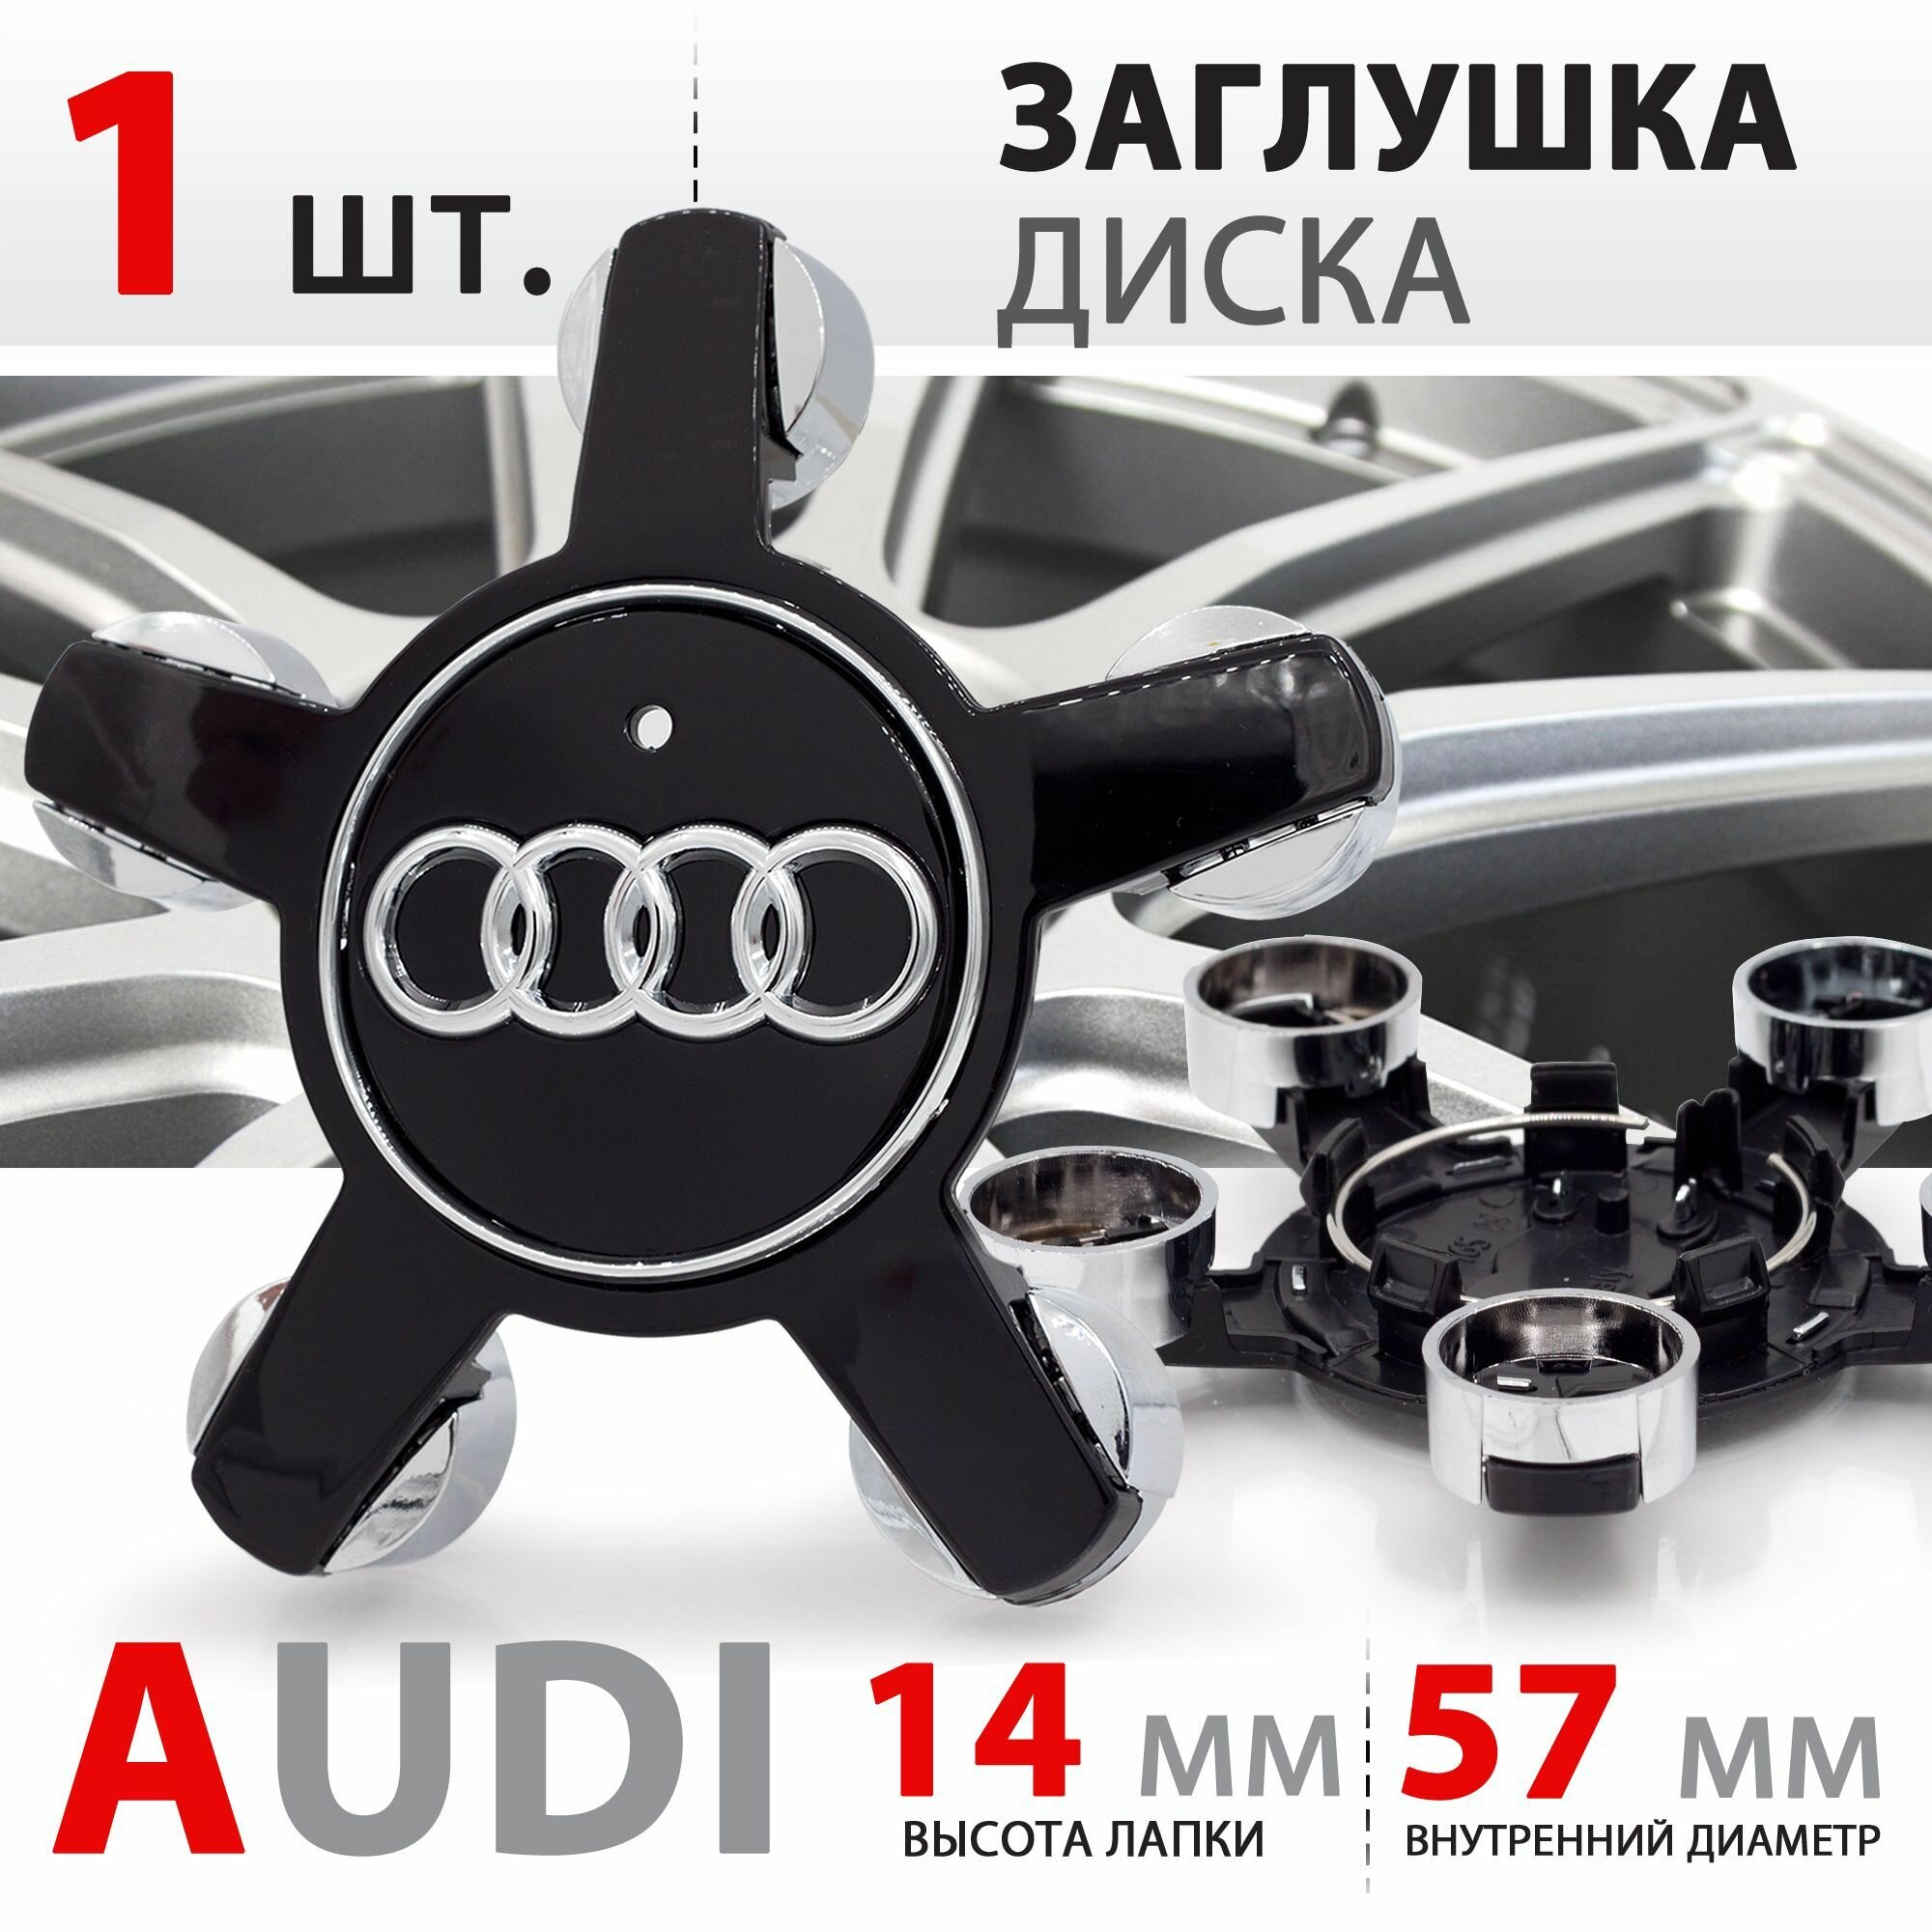 Колпачок заглушка на литой диск колеса для Audi "Звезда" / Ауди 5х112 R16 R17 R18 / 4F0601165N - 1 штука черный